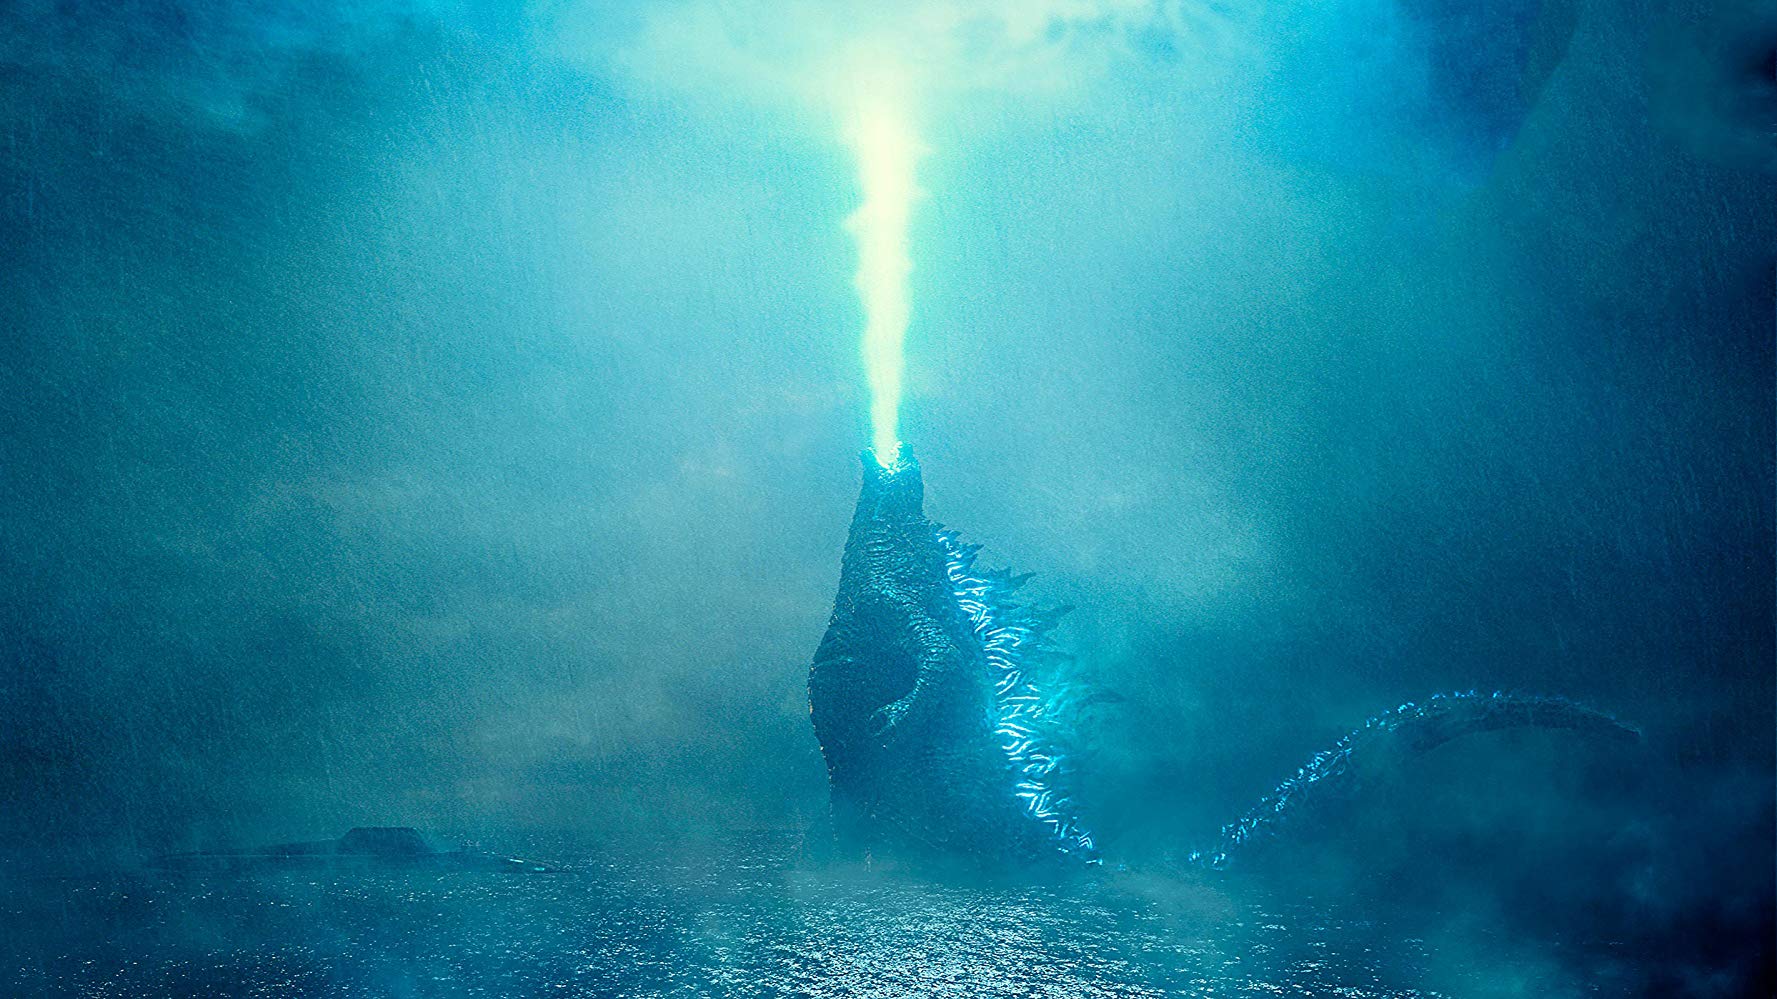 Godzilla Rey de los monstruos 2019